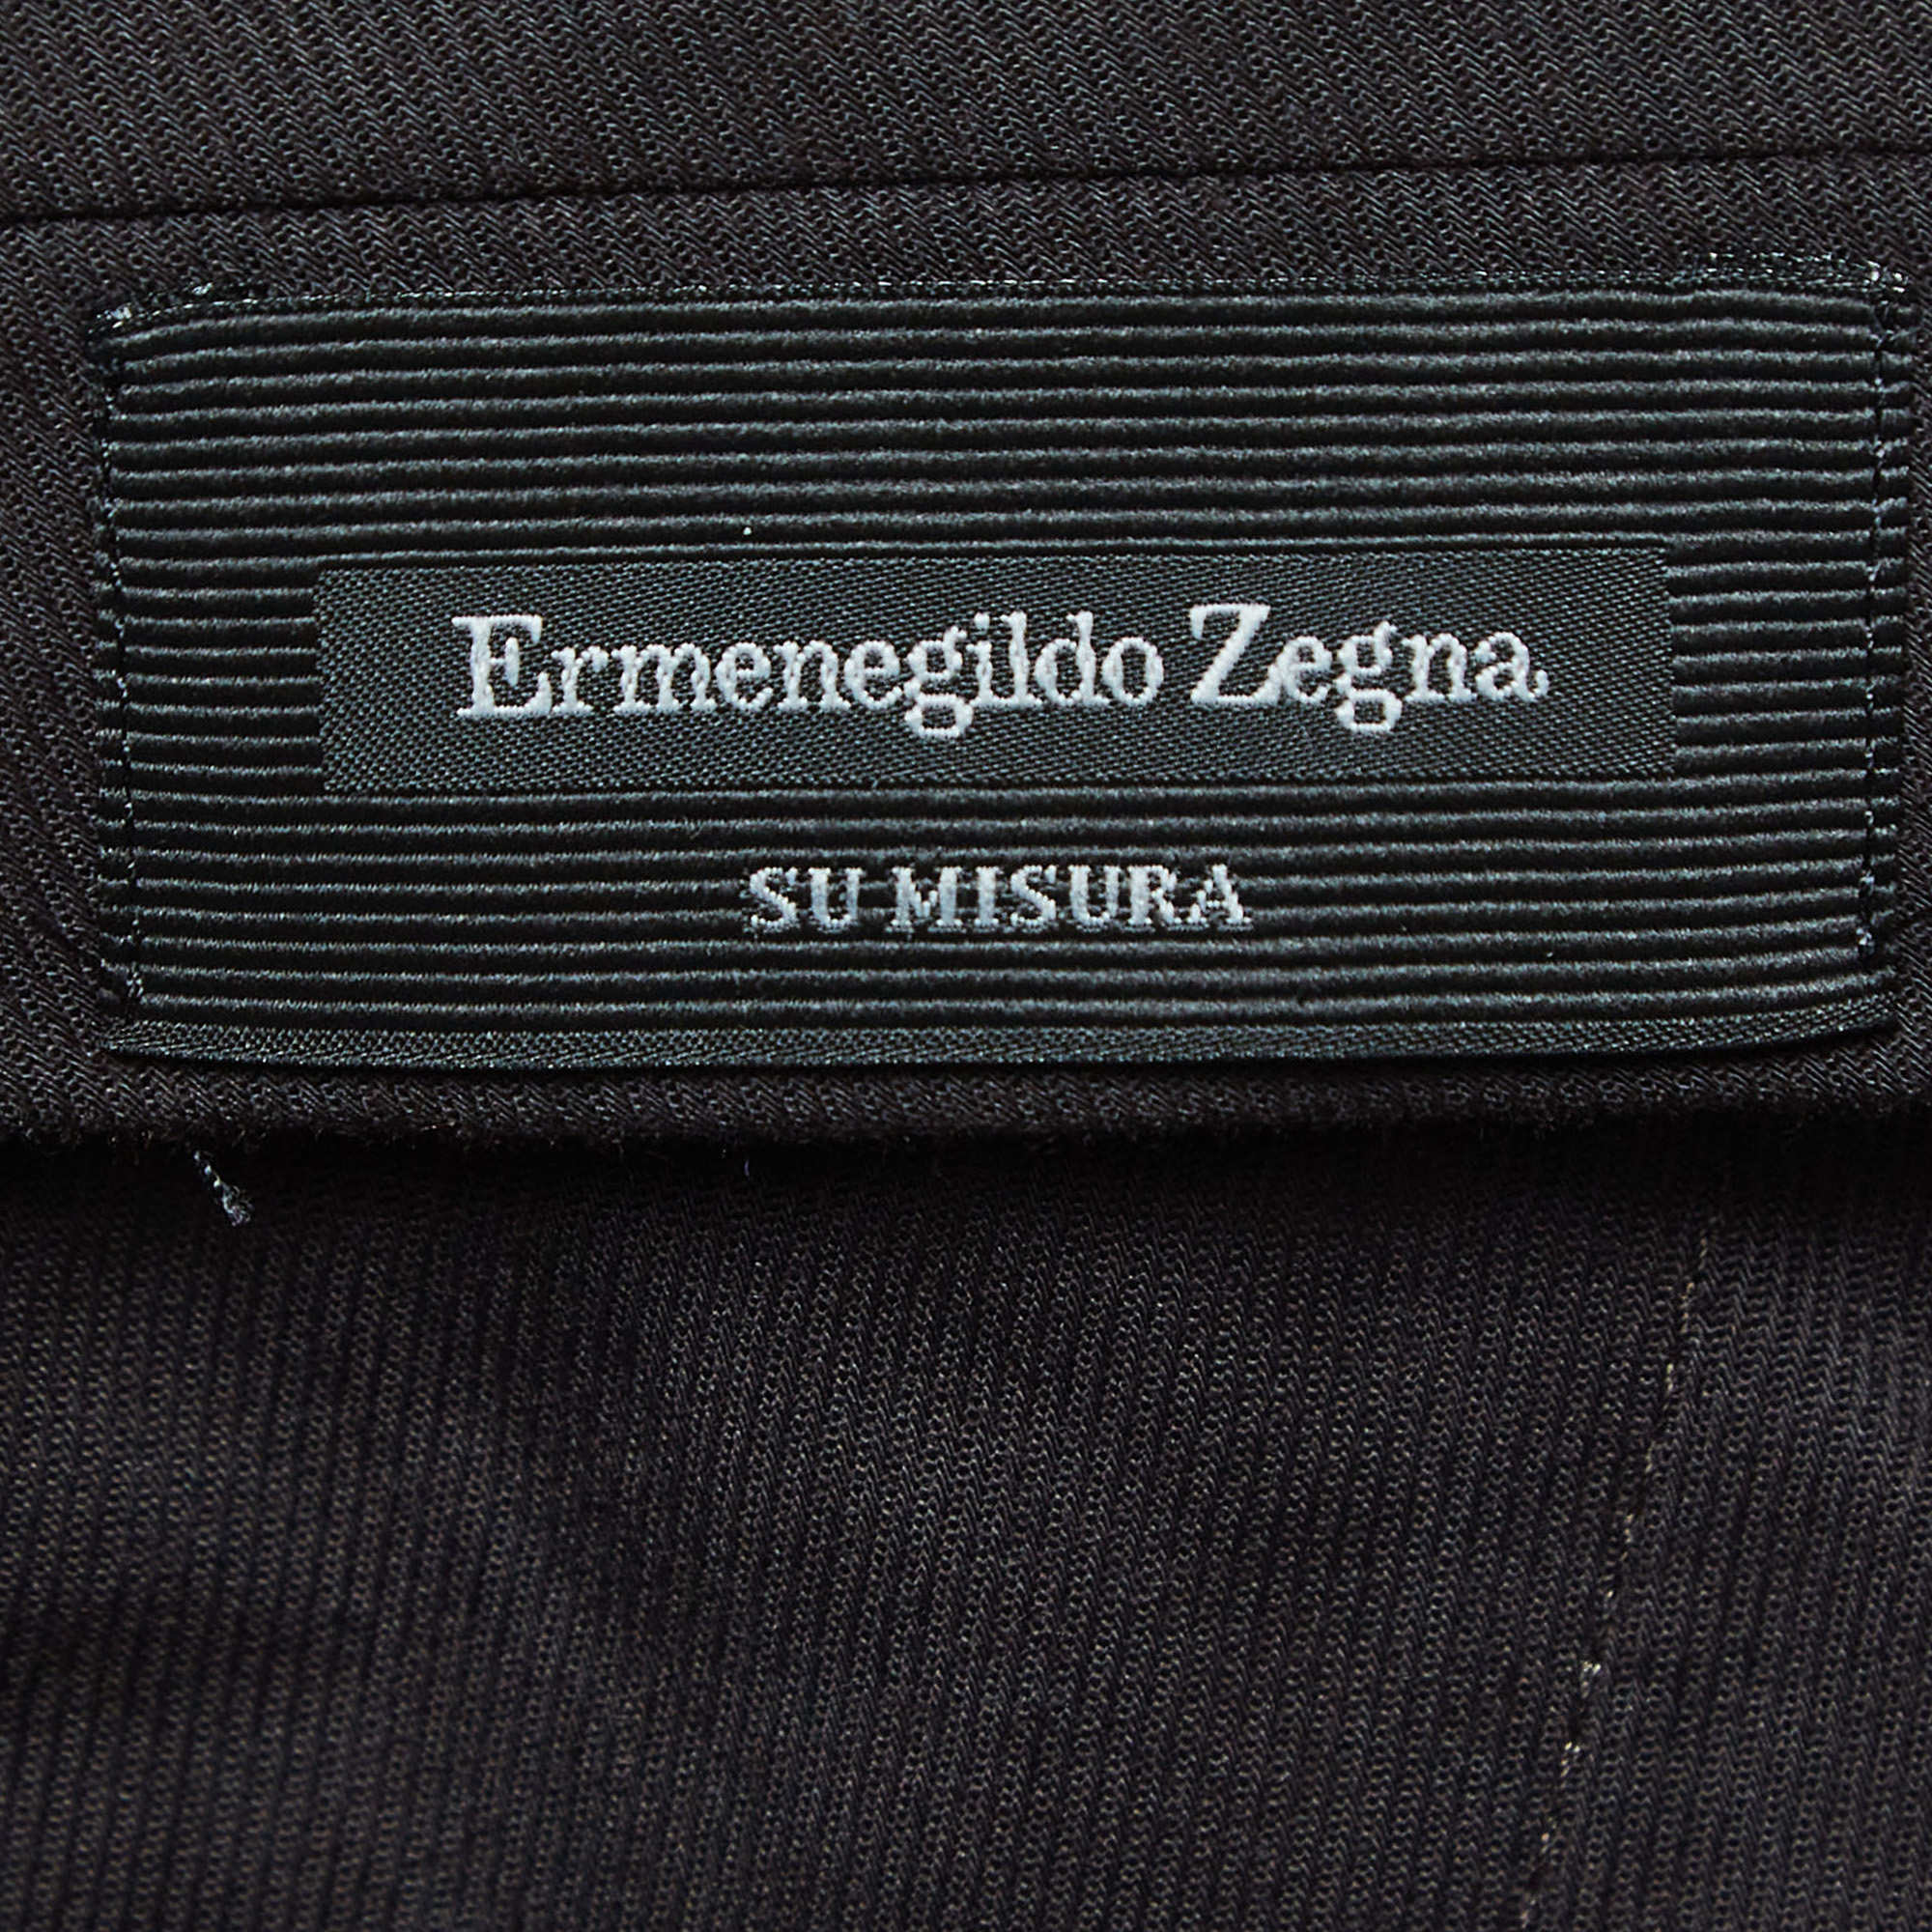 Ermenegildo Zegna Su Misura Beige Wool & Silk Tailored Trousers XXL